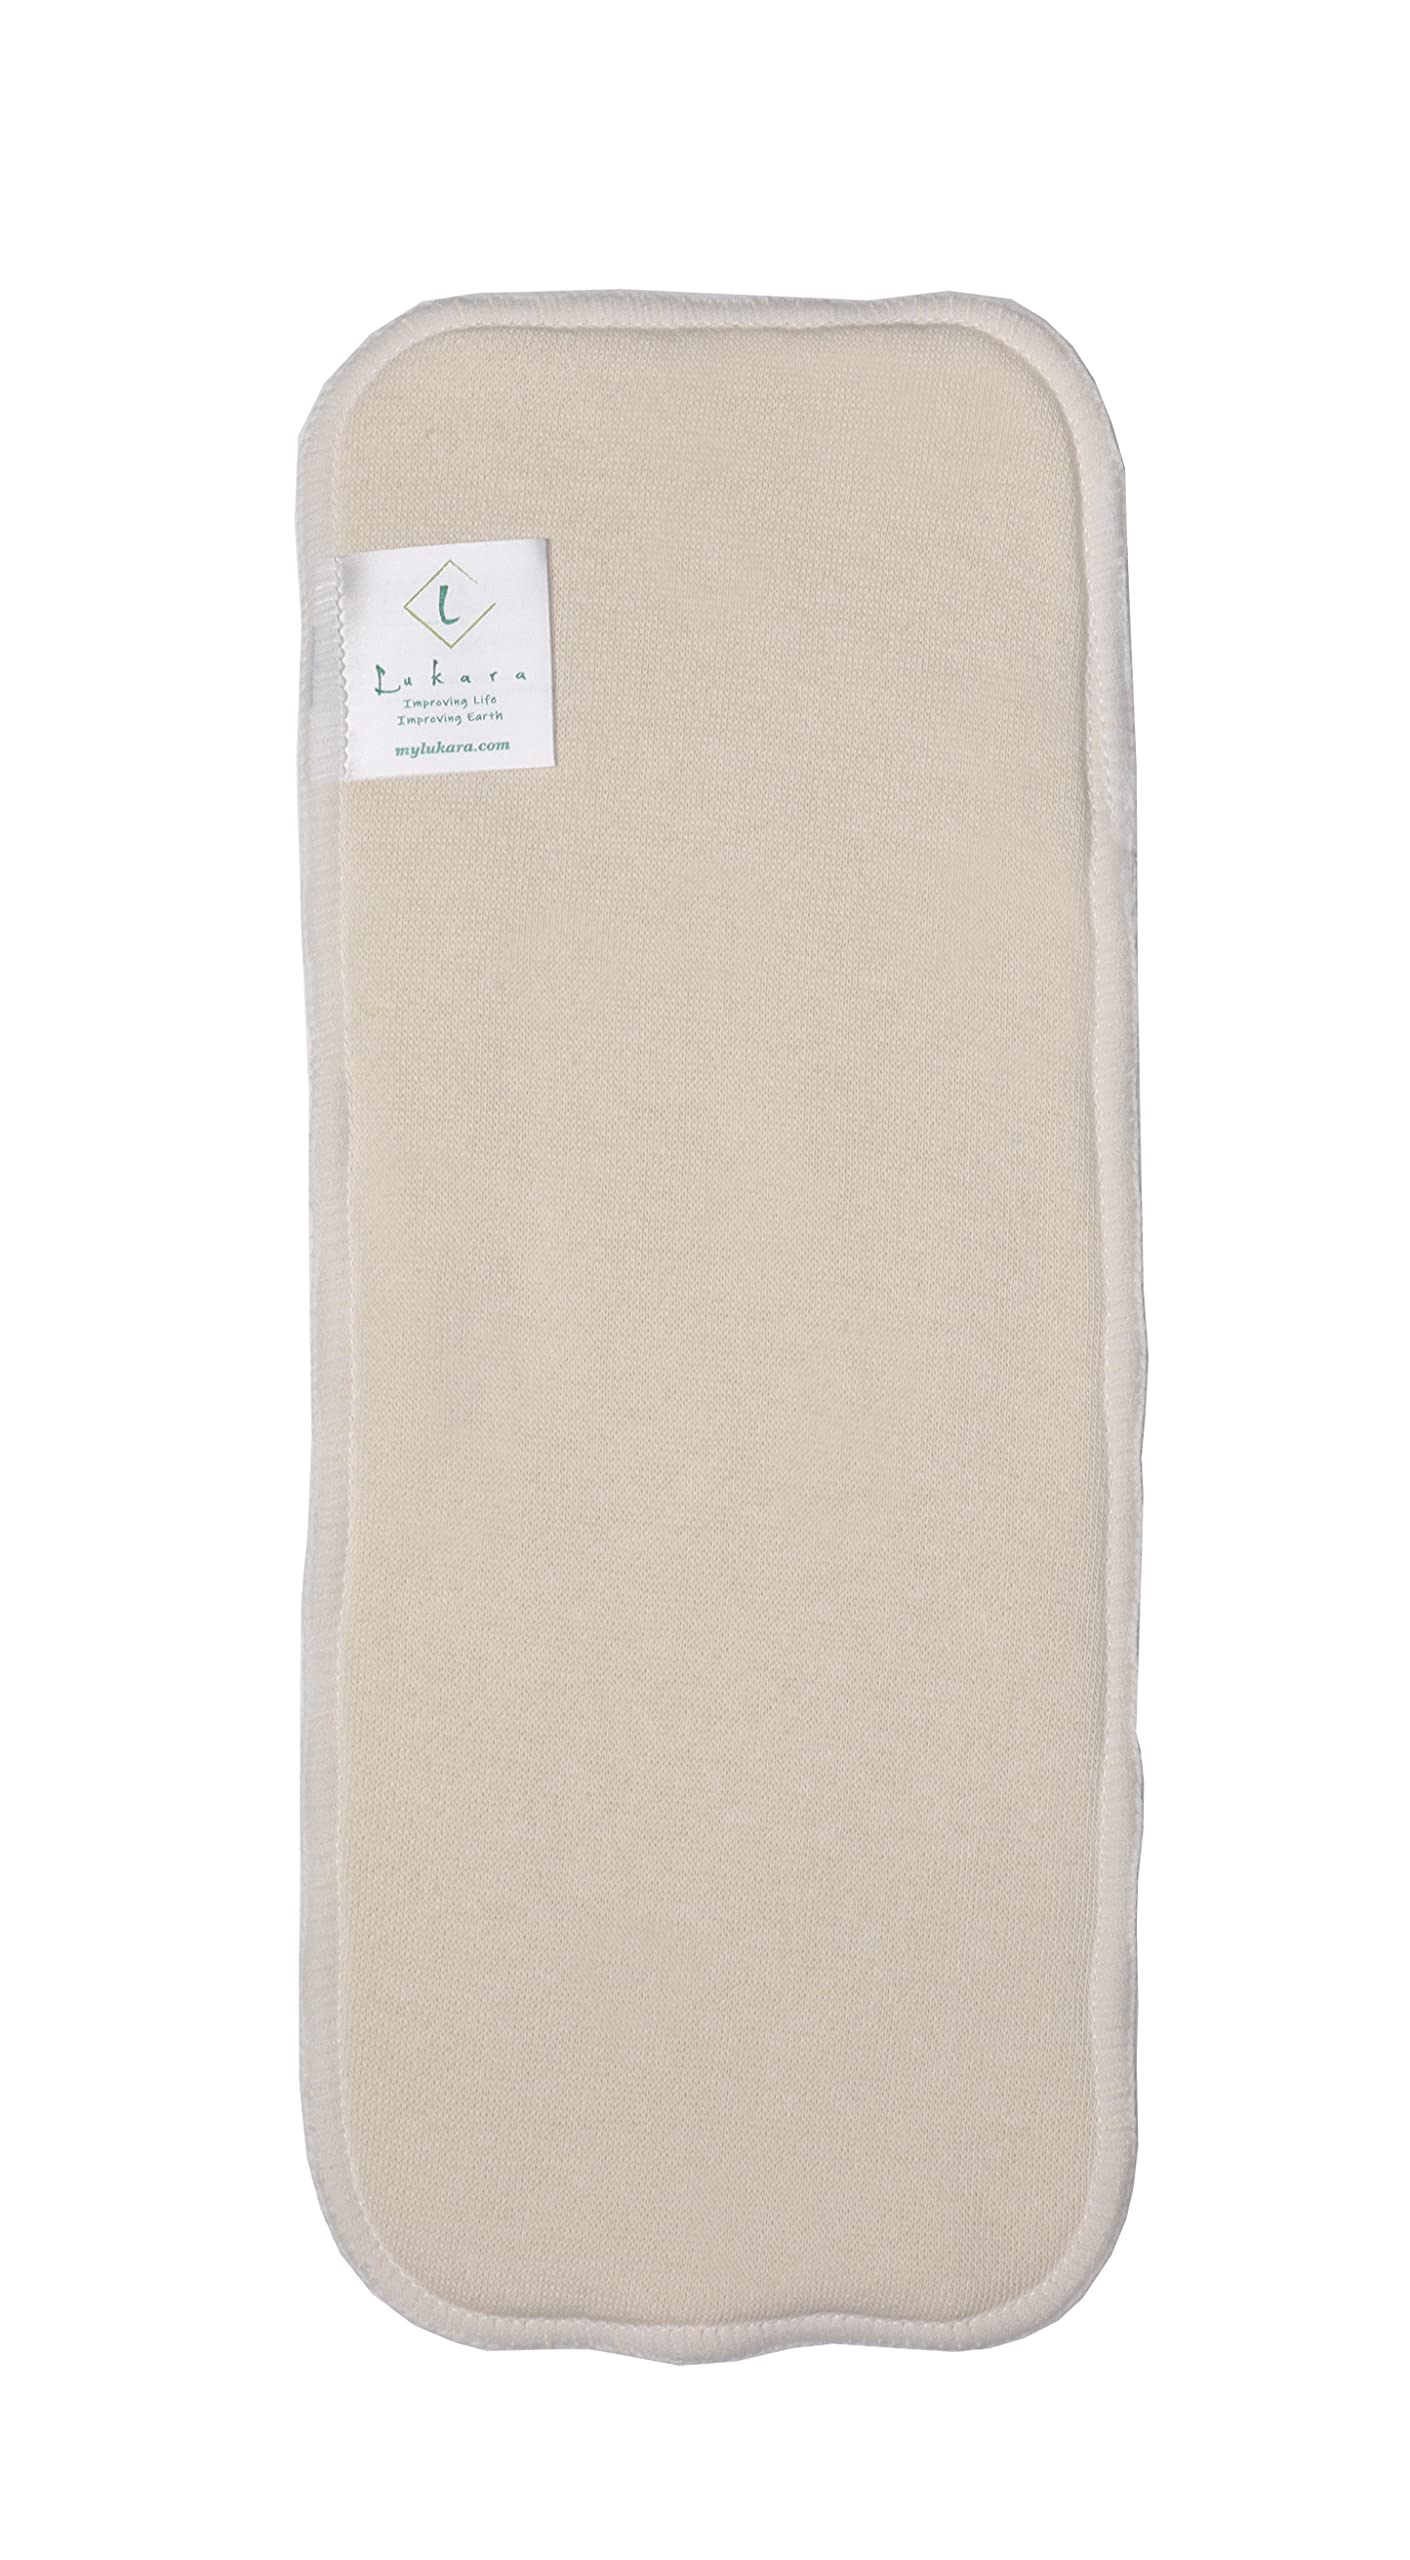 Lukara Hemp Cloth Diaper Inserts - Reusable Cloth Diaper Liners for Children, Hemp Diaper Inserts for All Needs, Fits All Diapers & Absorbent Hemp Inserts for Cloth Diapers, Reusable Diapers (5 Pack)